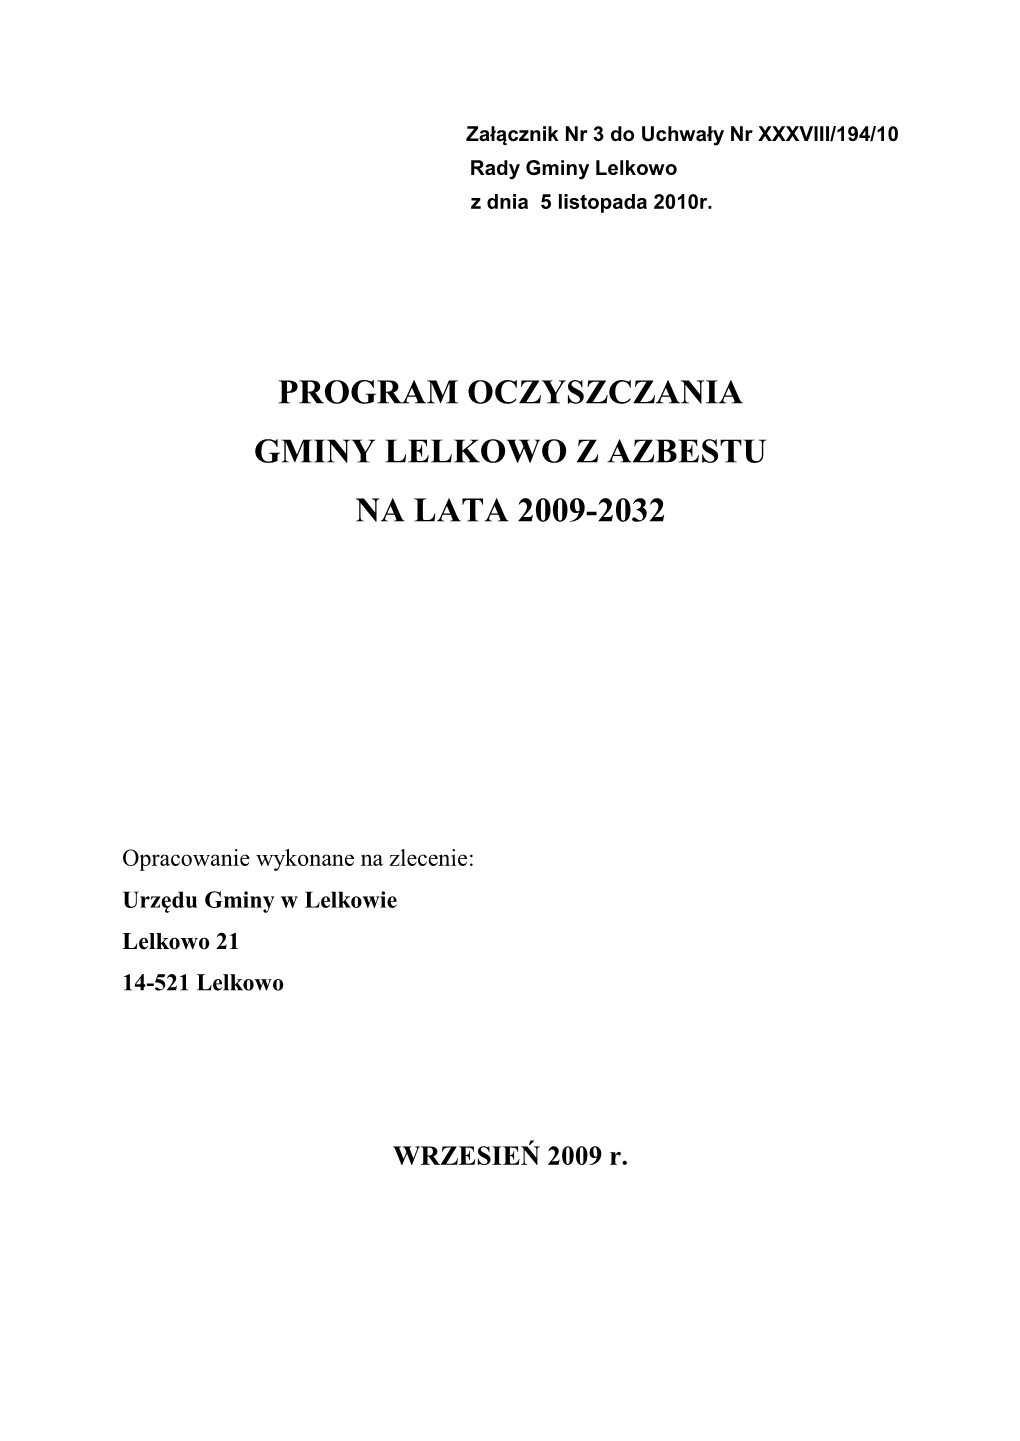 Program Oczyszczania Gminy Lelkowo Z Azbestu Na Lata 2009-2032